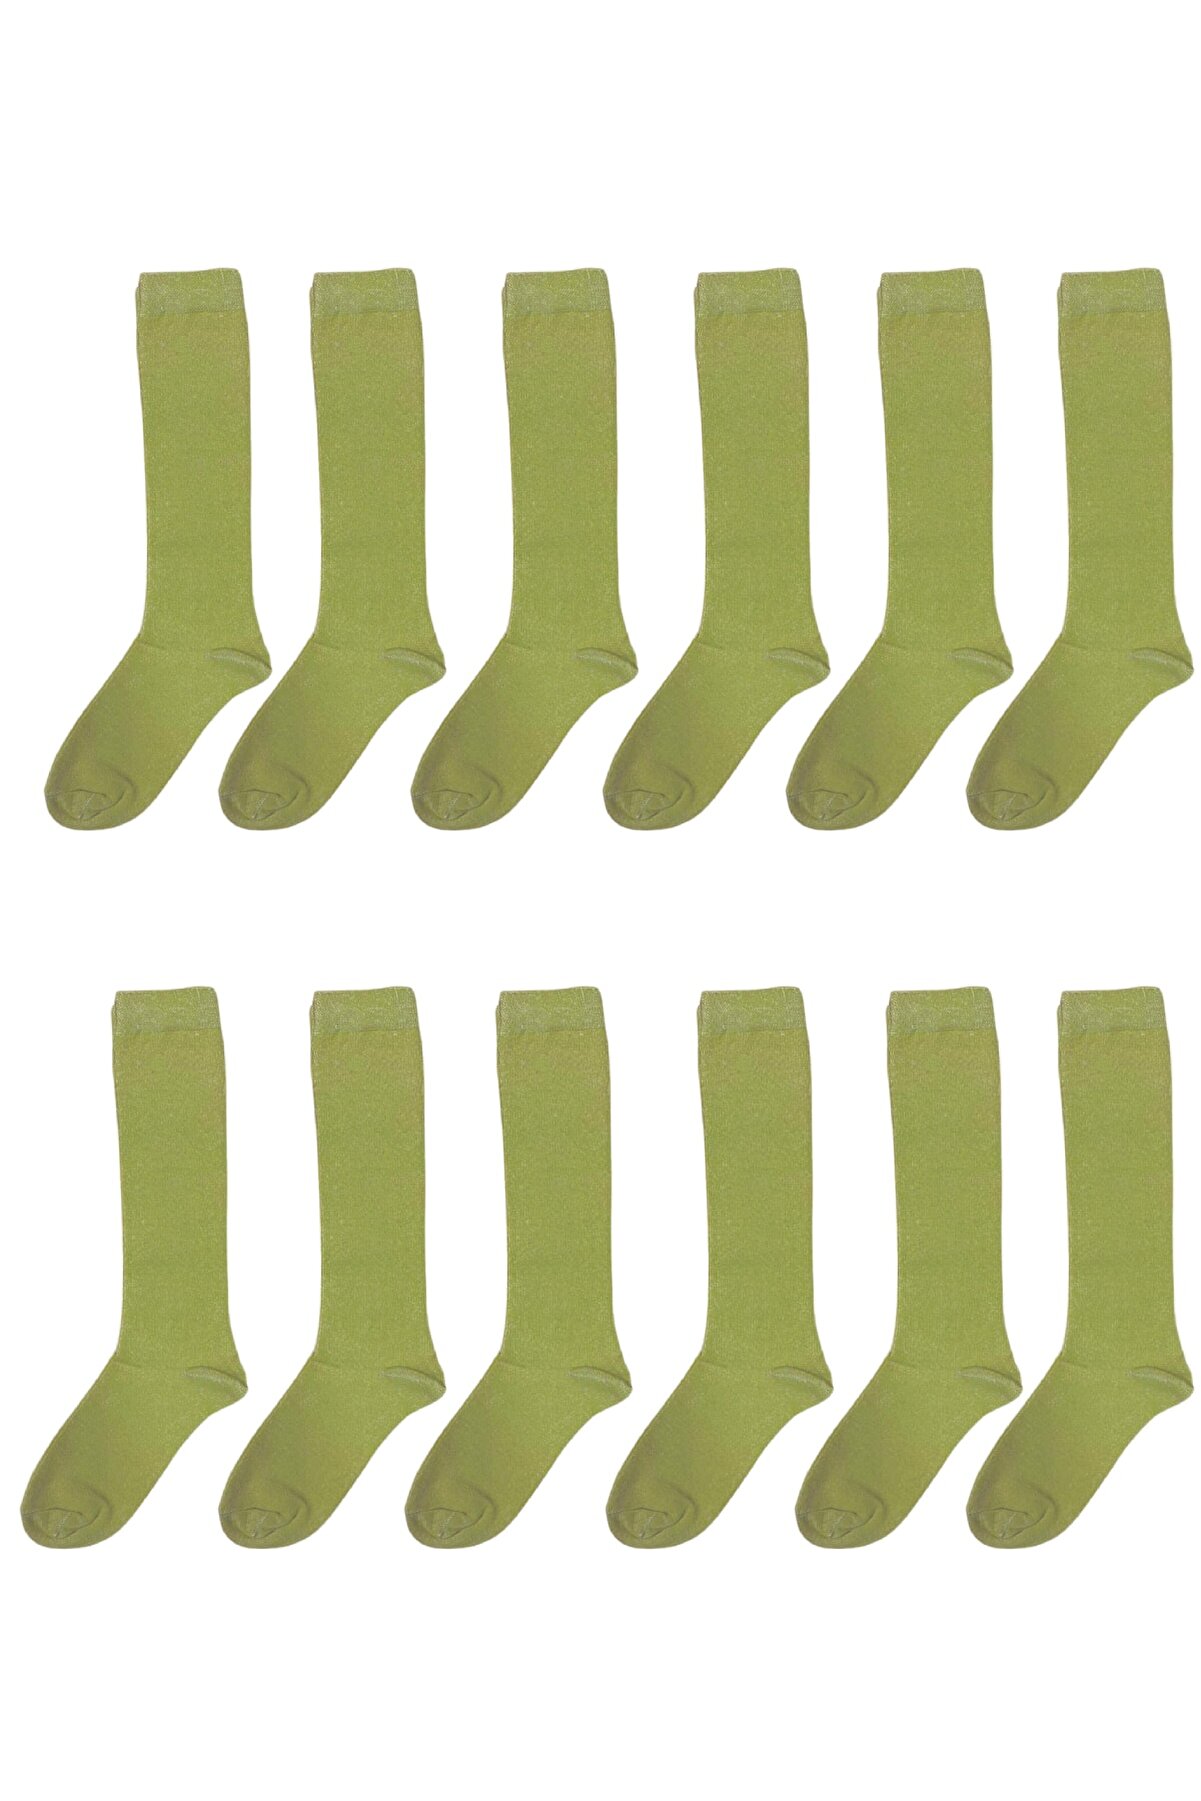 Silyon Askeri Giyim Asker Çorabı 12'li 4 Mevsim Çorap Acemi - Bedelli Asker